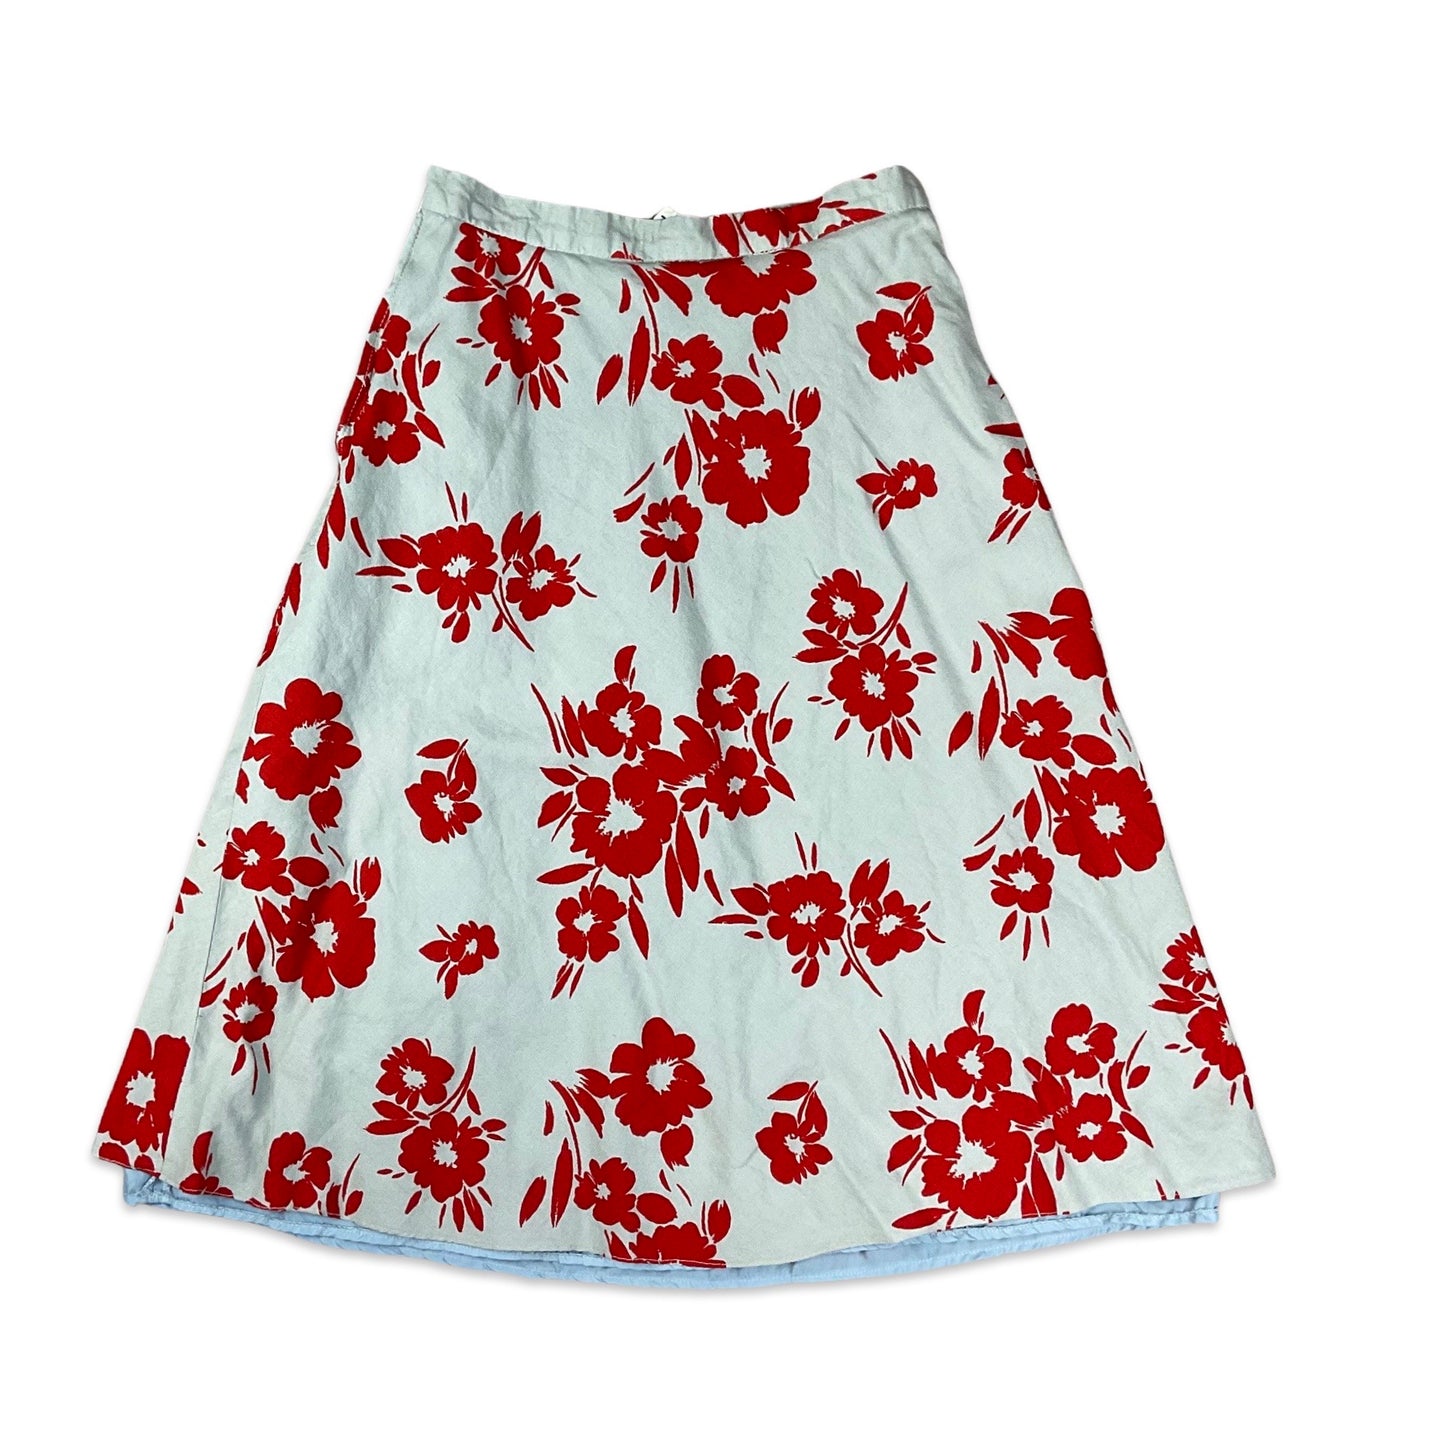 Vintage Grey & Red Floral Print A-line Skirt 4 6